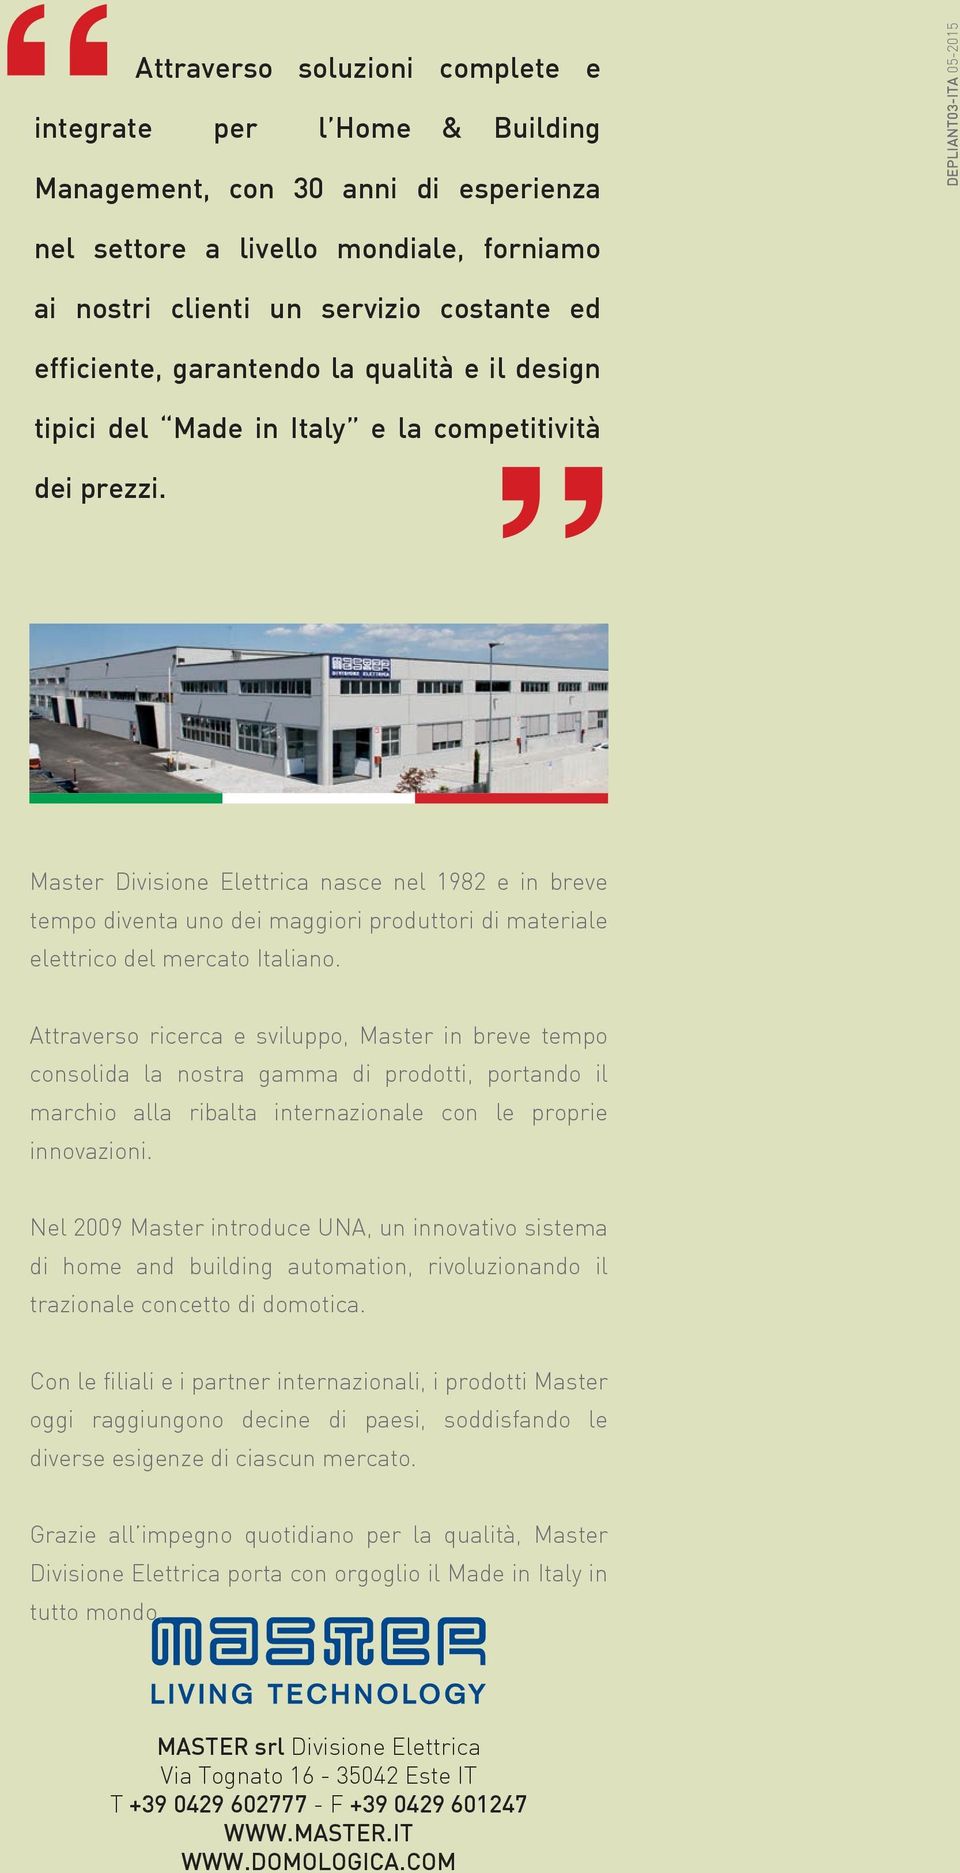 Master Divisione Elettrica nasce nel 1982 e in breve tempo diventa uno dei maggiori produttori di materiale elettrico del mercato Italiano.